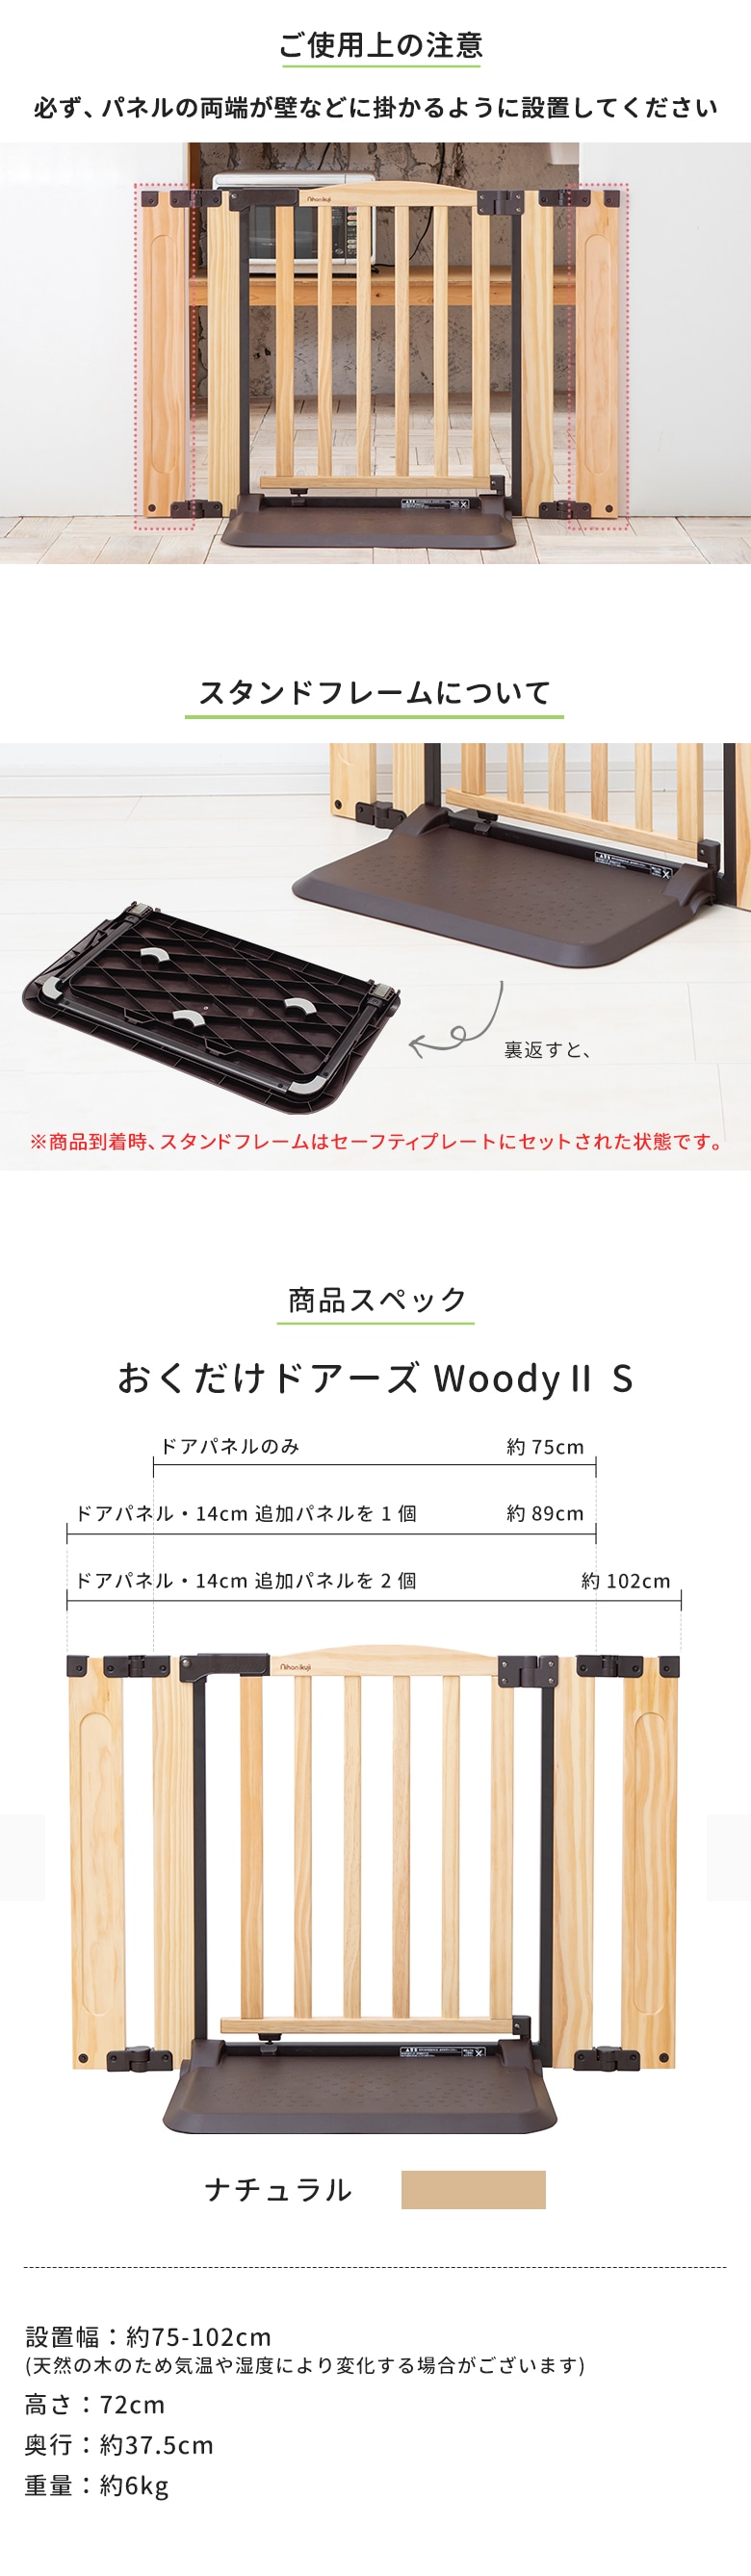 日本育児 おくだけドアーズWoodyⅡ Sサイズ すべり止めマット付き nihonikuji |  ベビーゲート・パーテーション